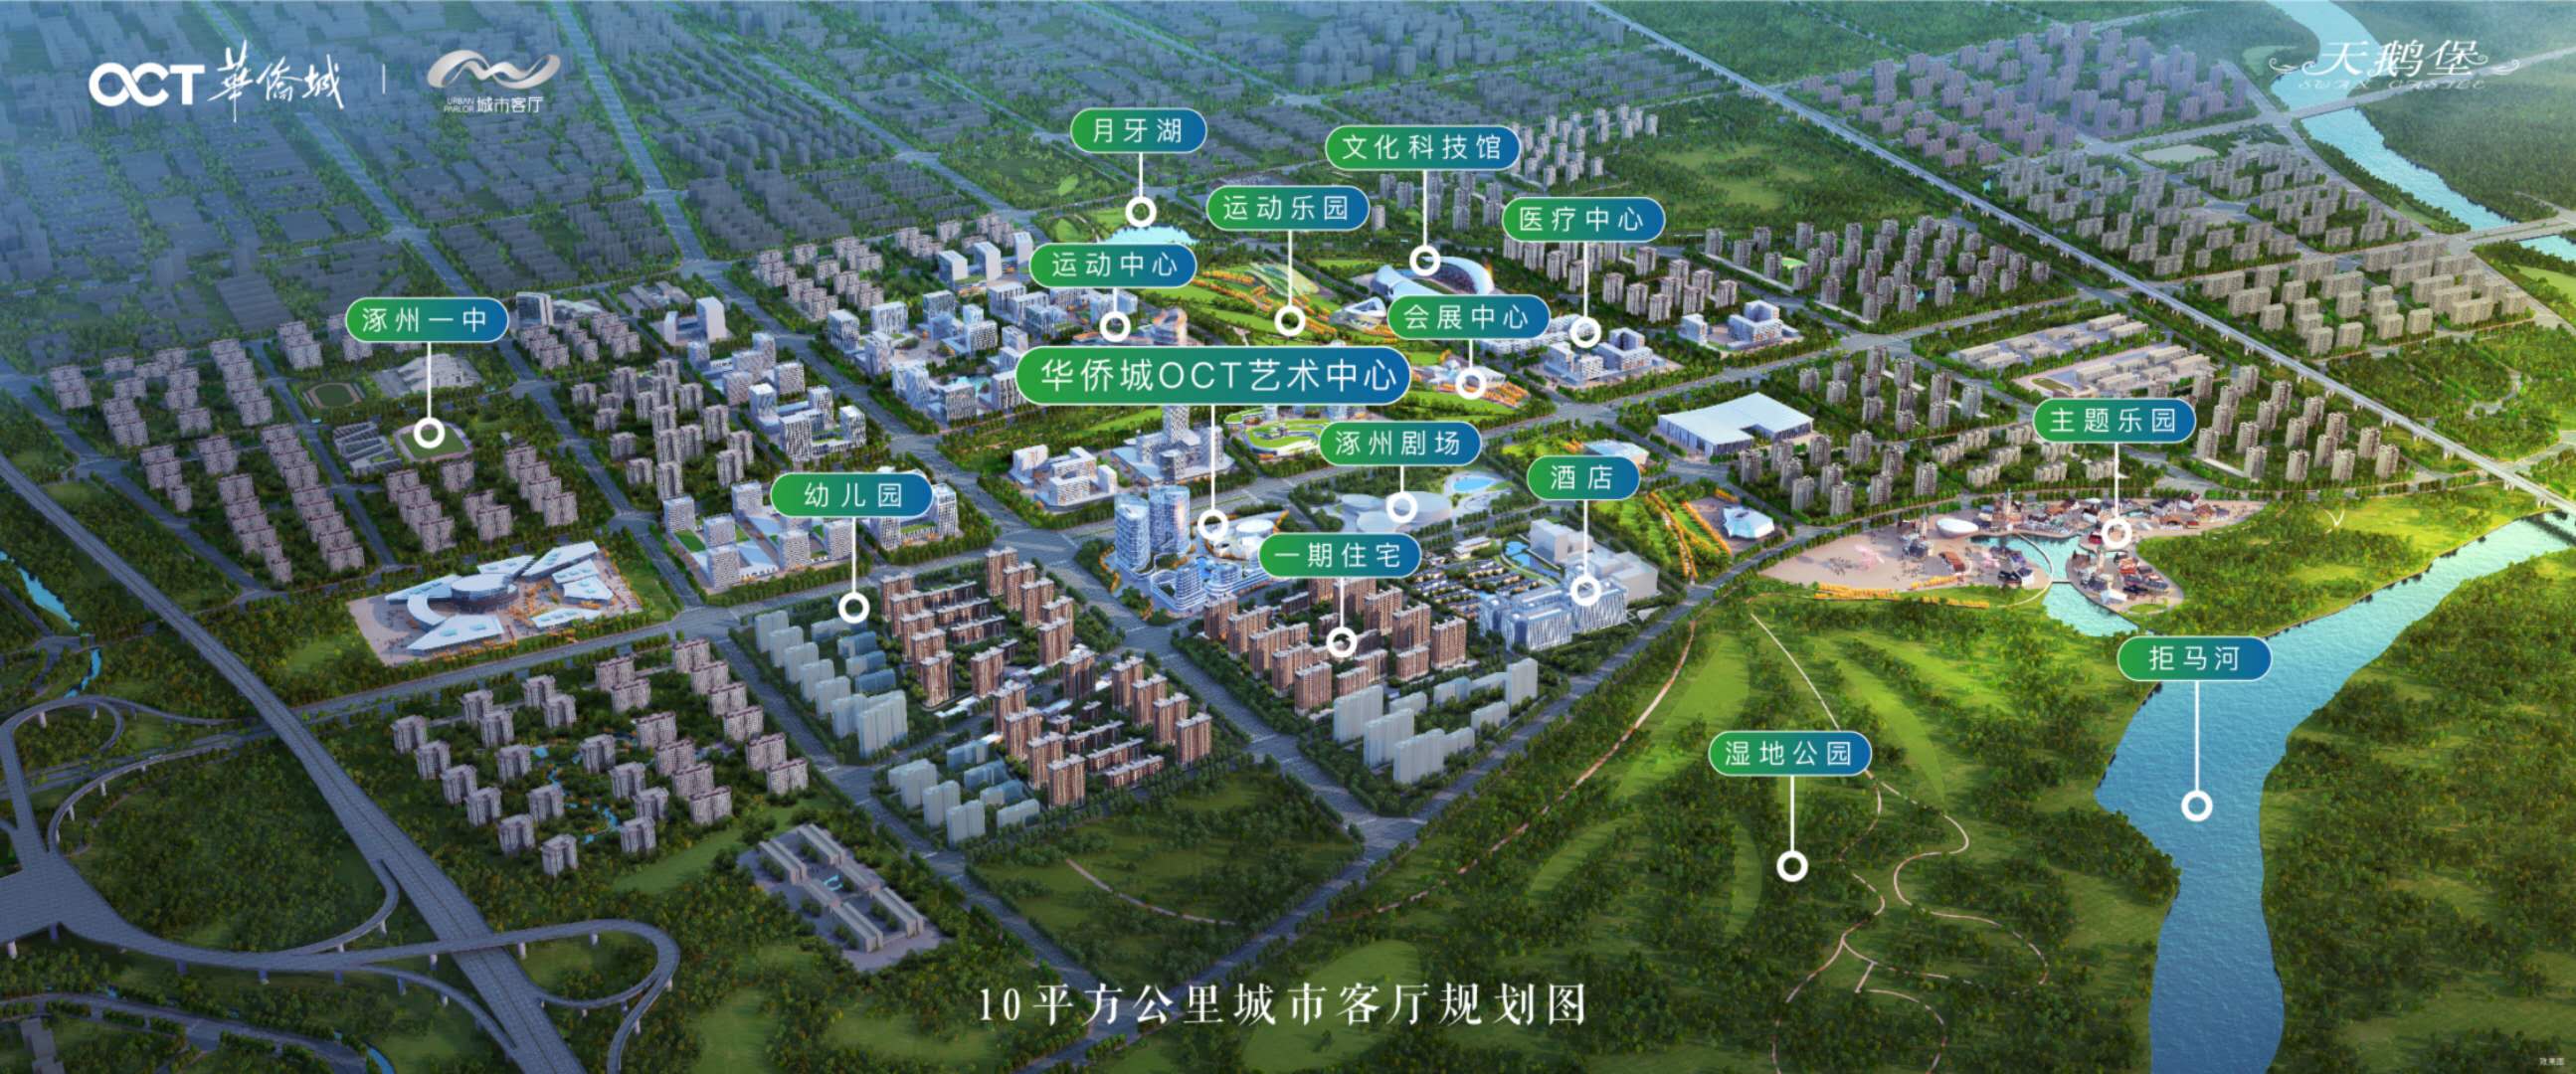 涿州华侨城周边规划发展